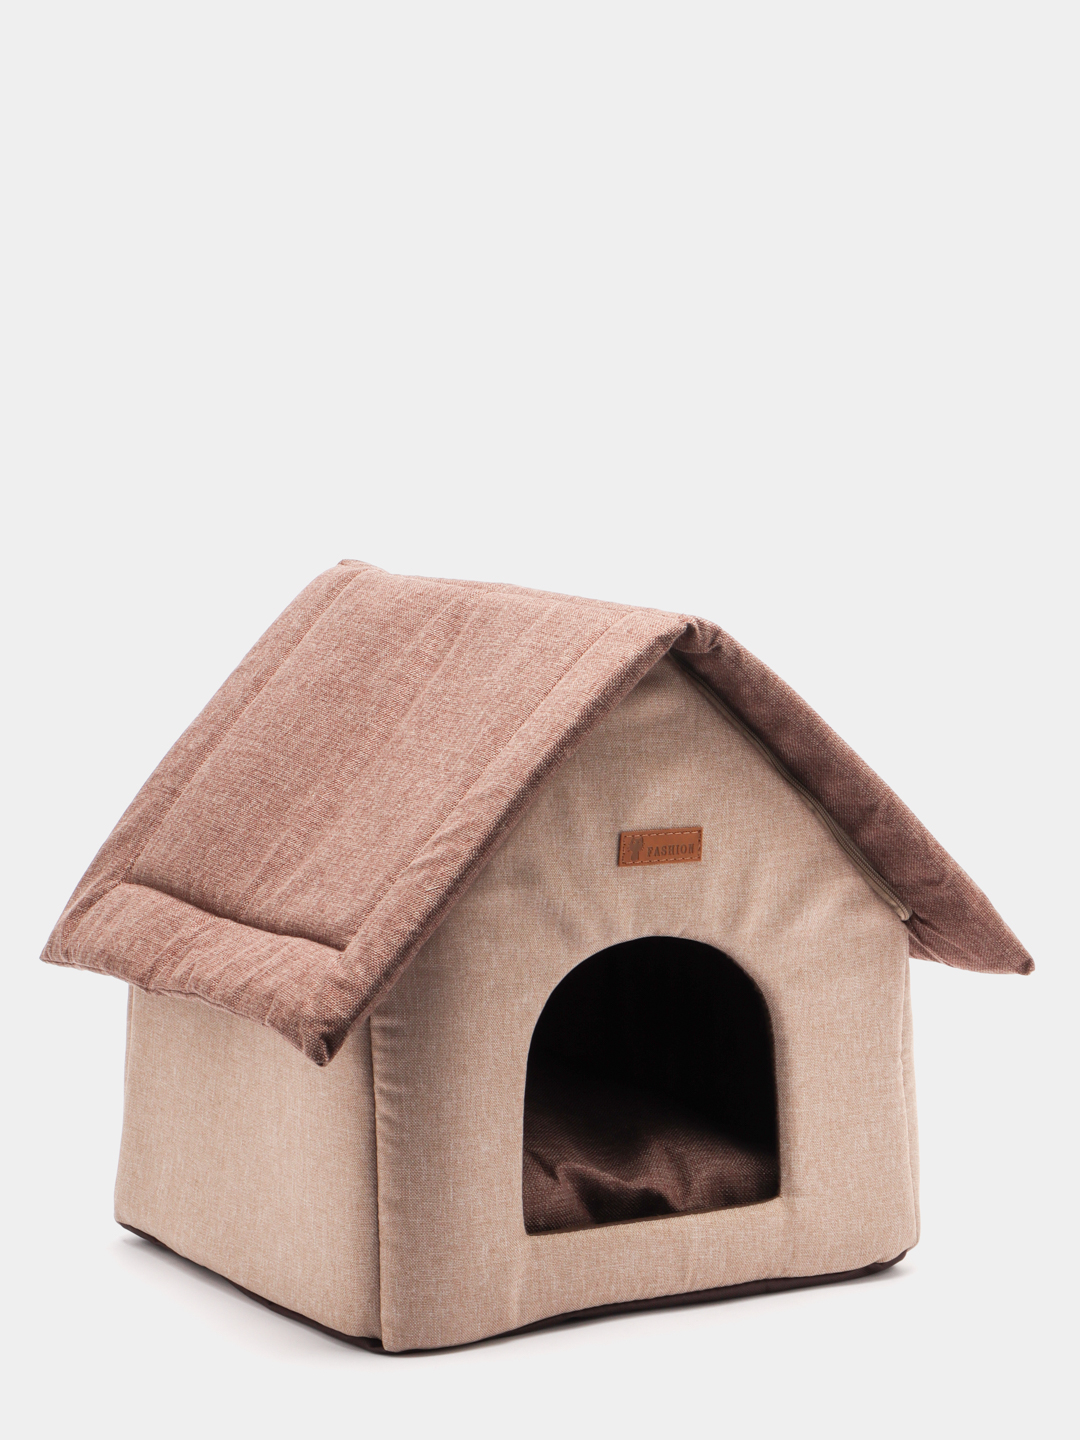 Дом для кошки Малый (овальная крыша)